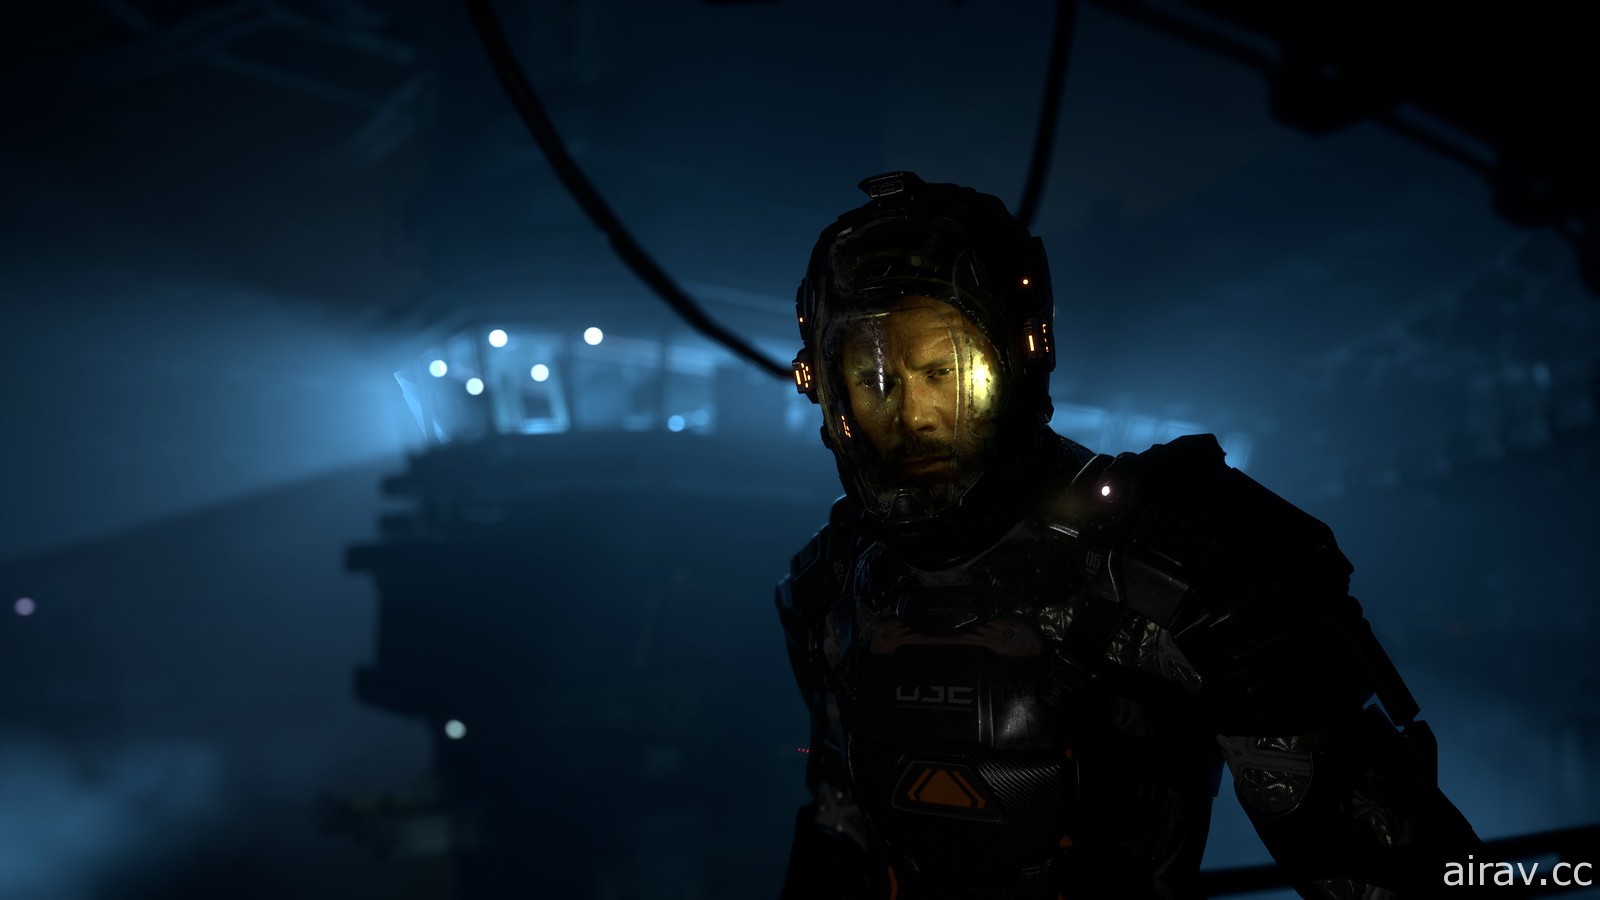 《绝命异次元》创作者恐怖生存新作《卡利斯托协议》首度曝光游戏内容 确定 12 月问世